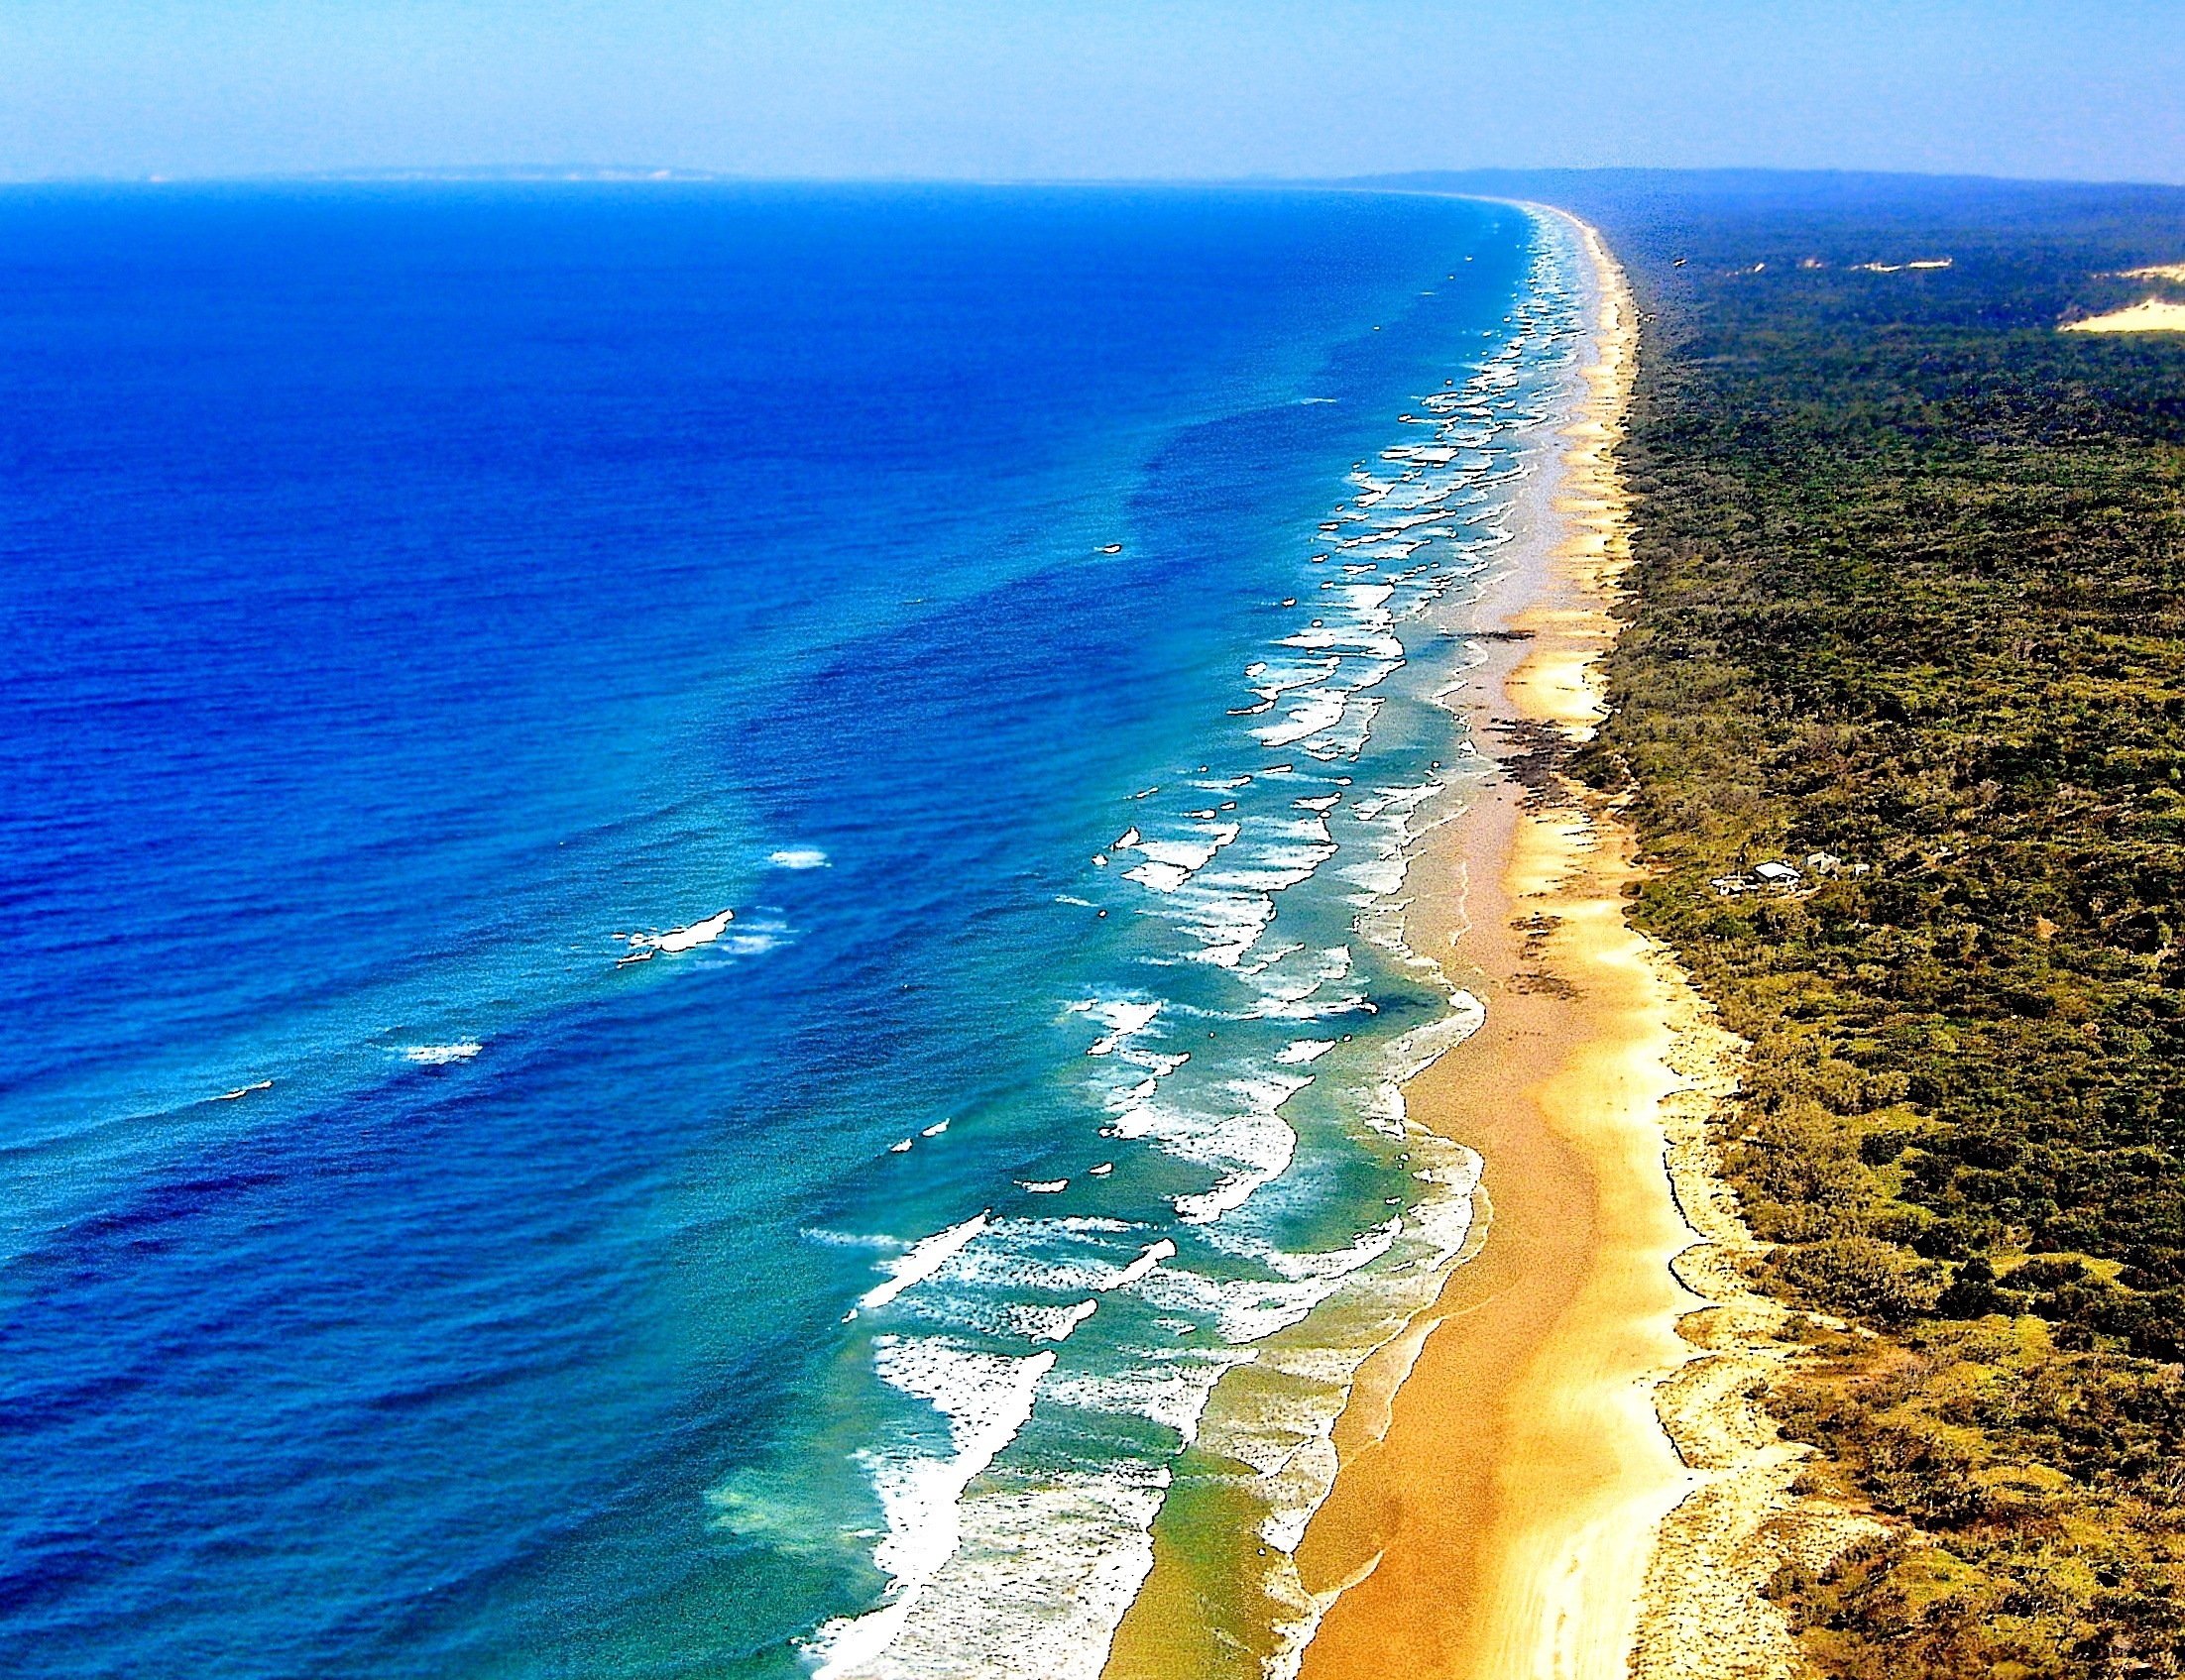 Моря английского океана. Остров Фрейзер, Квинсленд, Австралия. Песчаный остров Фрейзер в Австралии. Остров Фрейзер штат Квинслен. Пляж Квинсленд в Австралии.